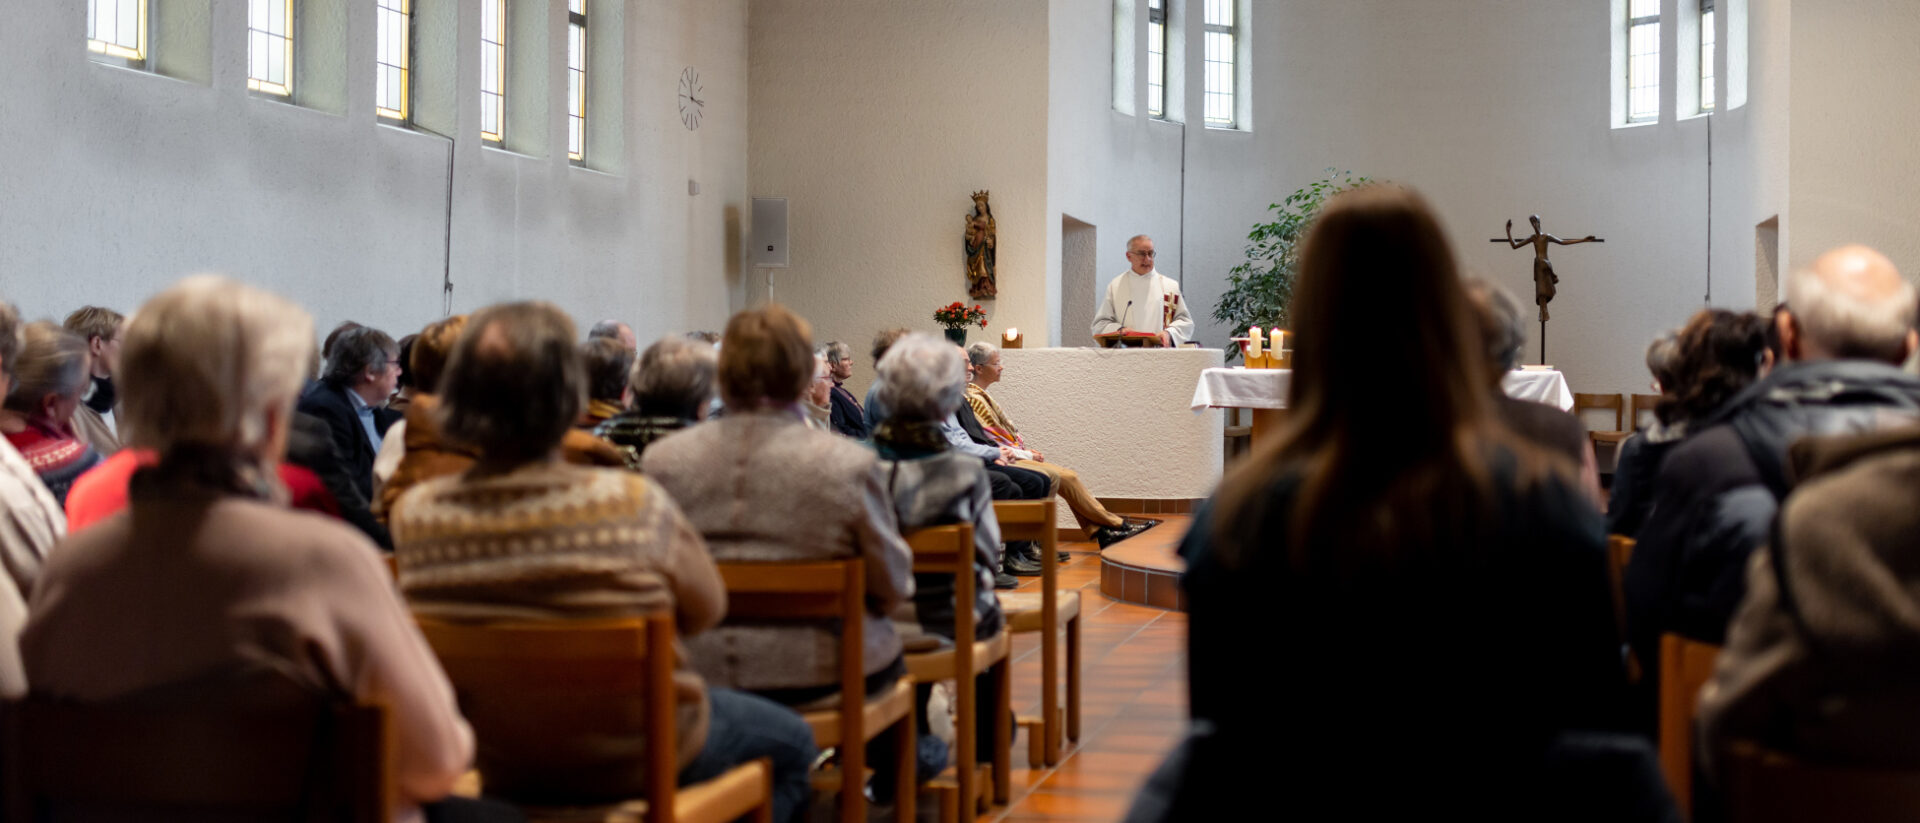 Gut besetzter Gottesdienst in der Klosterkirche Schaan – mit Martin Werlen